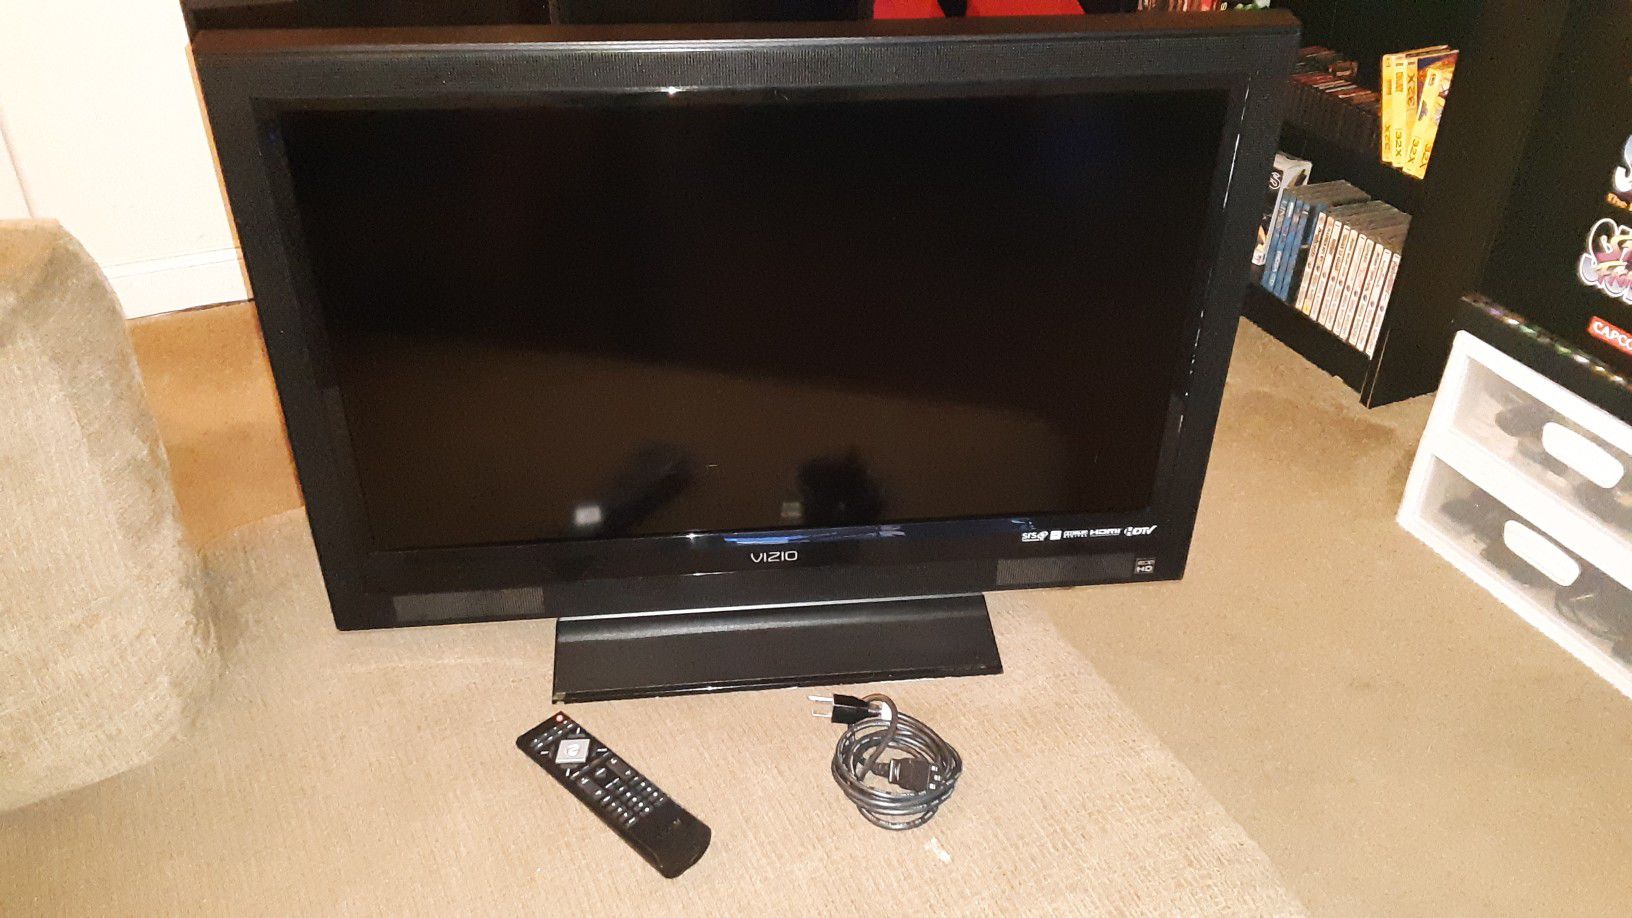 Vizio 32" LCD TV